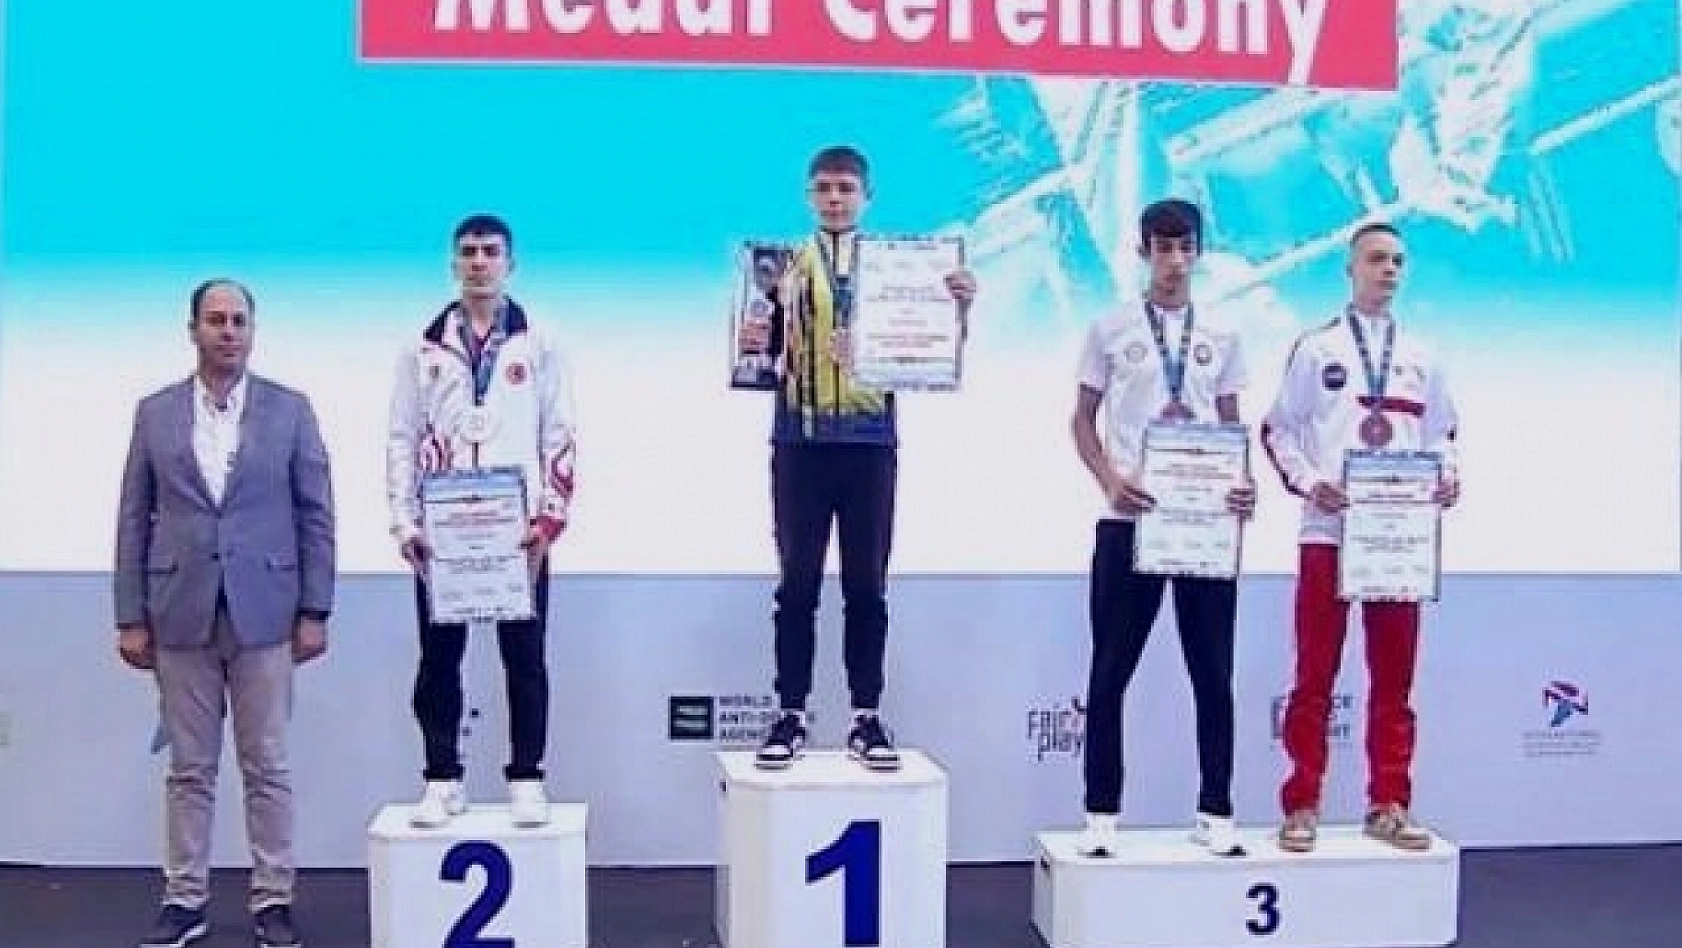 Kick boksta Elazığlı sporculardan 3 madalya